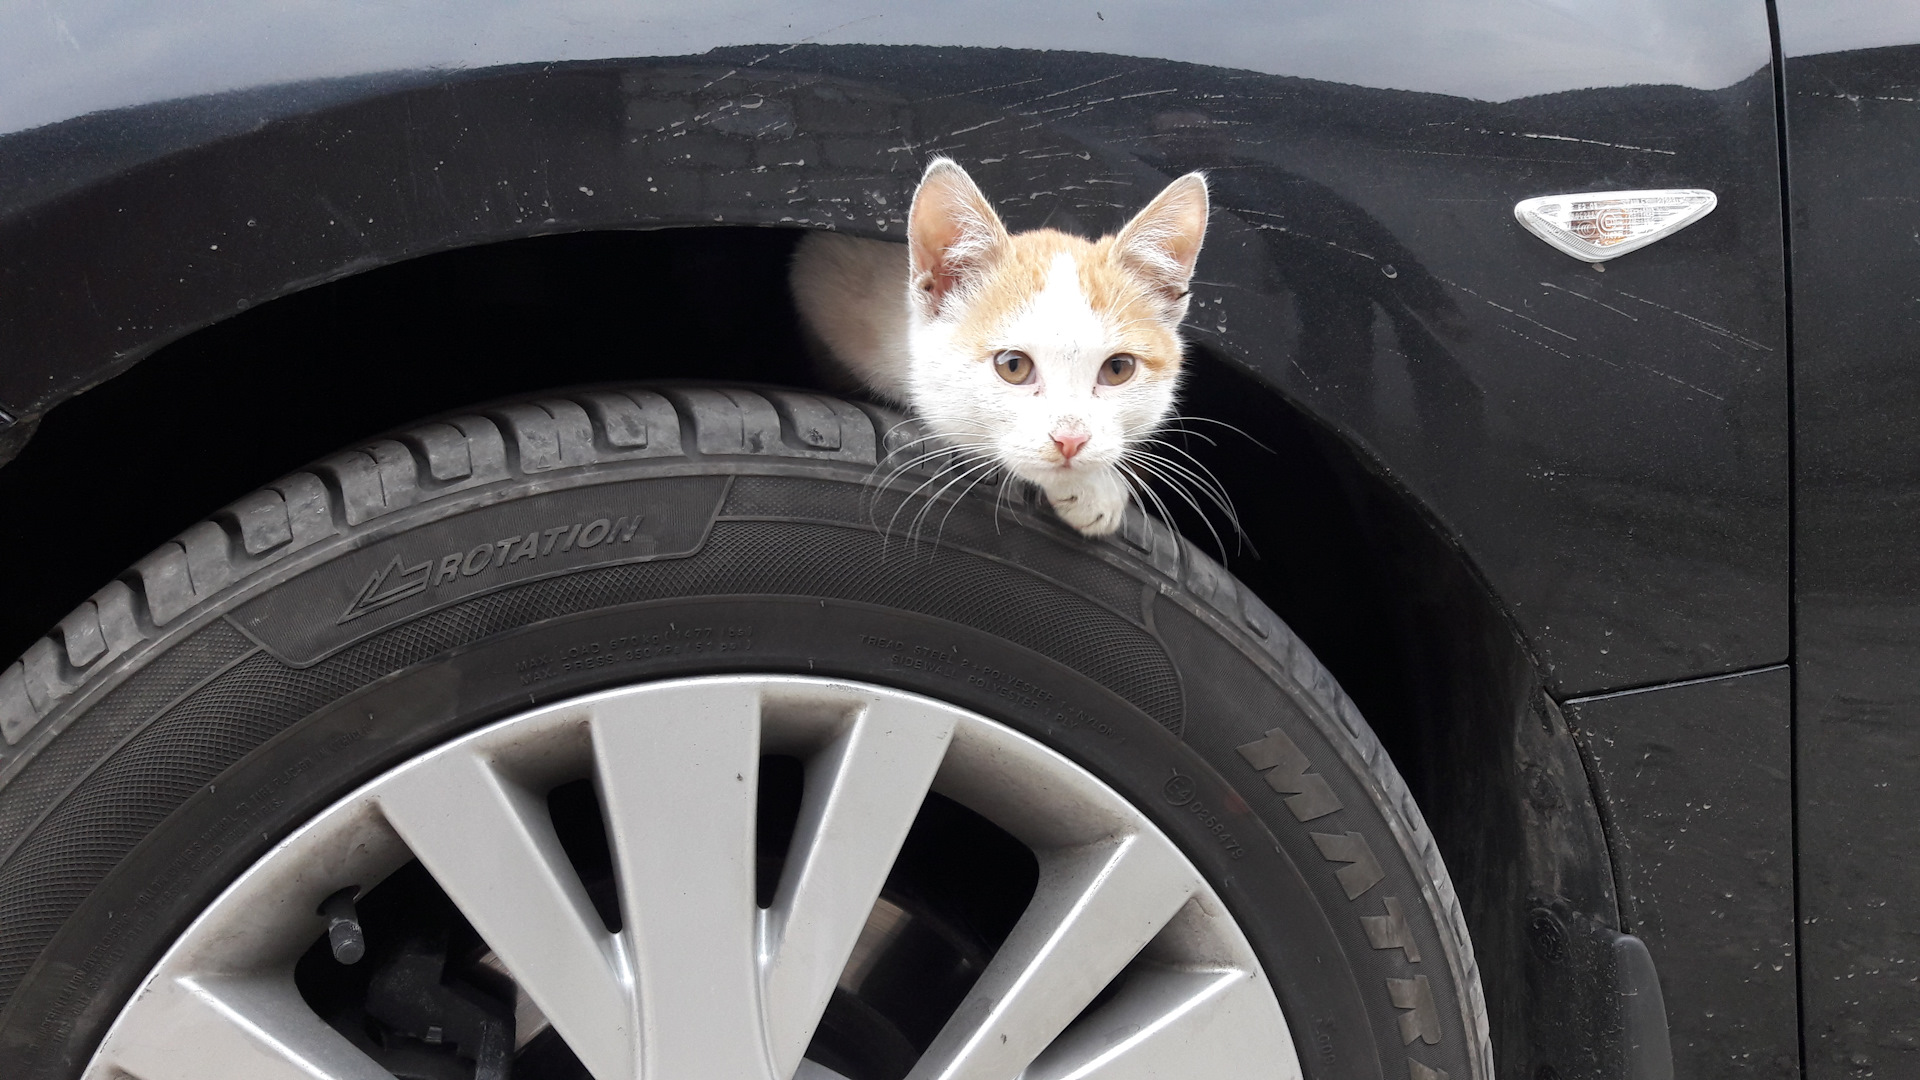 Включи машины котик. Пушистый попутчик. Где под машиной может спрятаться кошка.